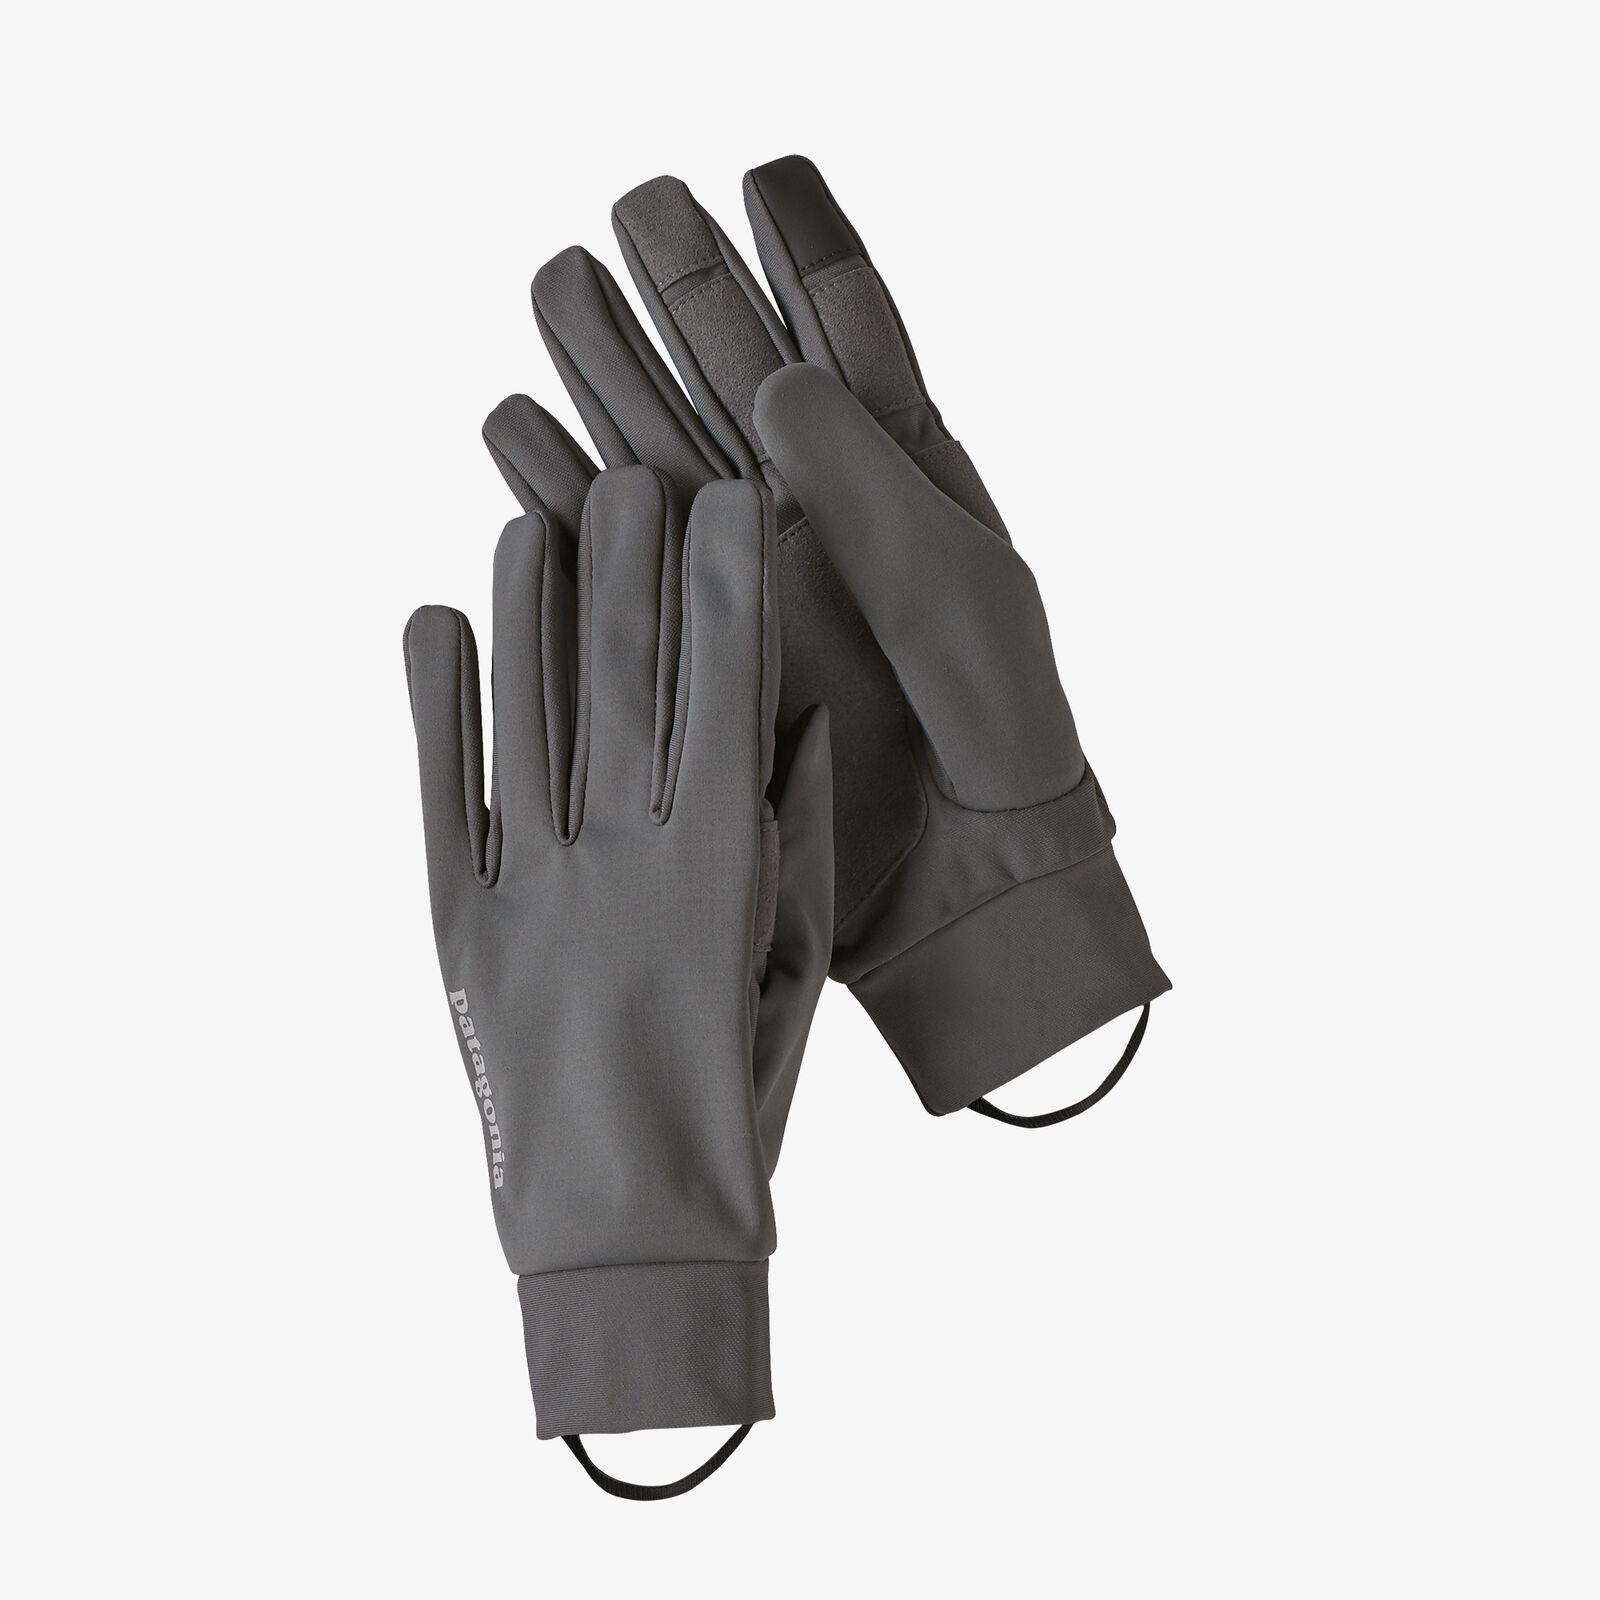 ウインド シールド グローブ パタゴニア公式サイト Wind Shield Gloves